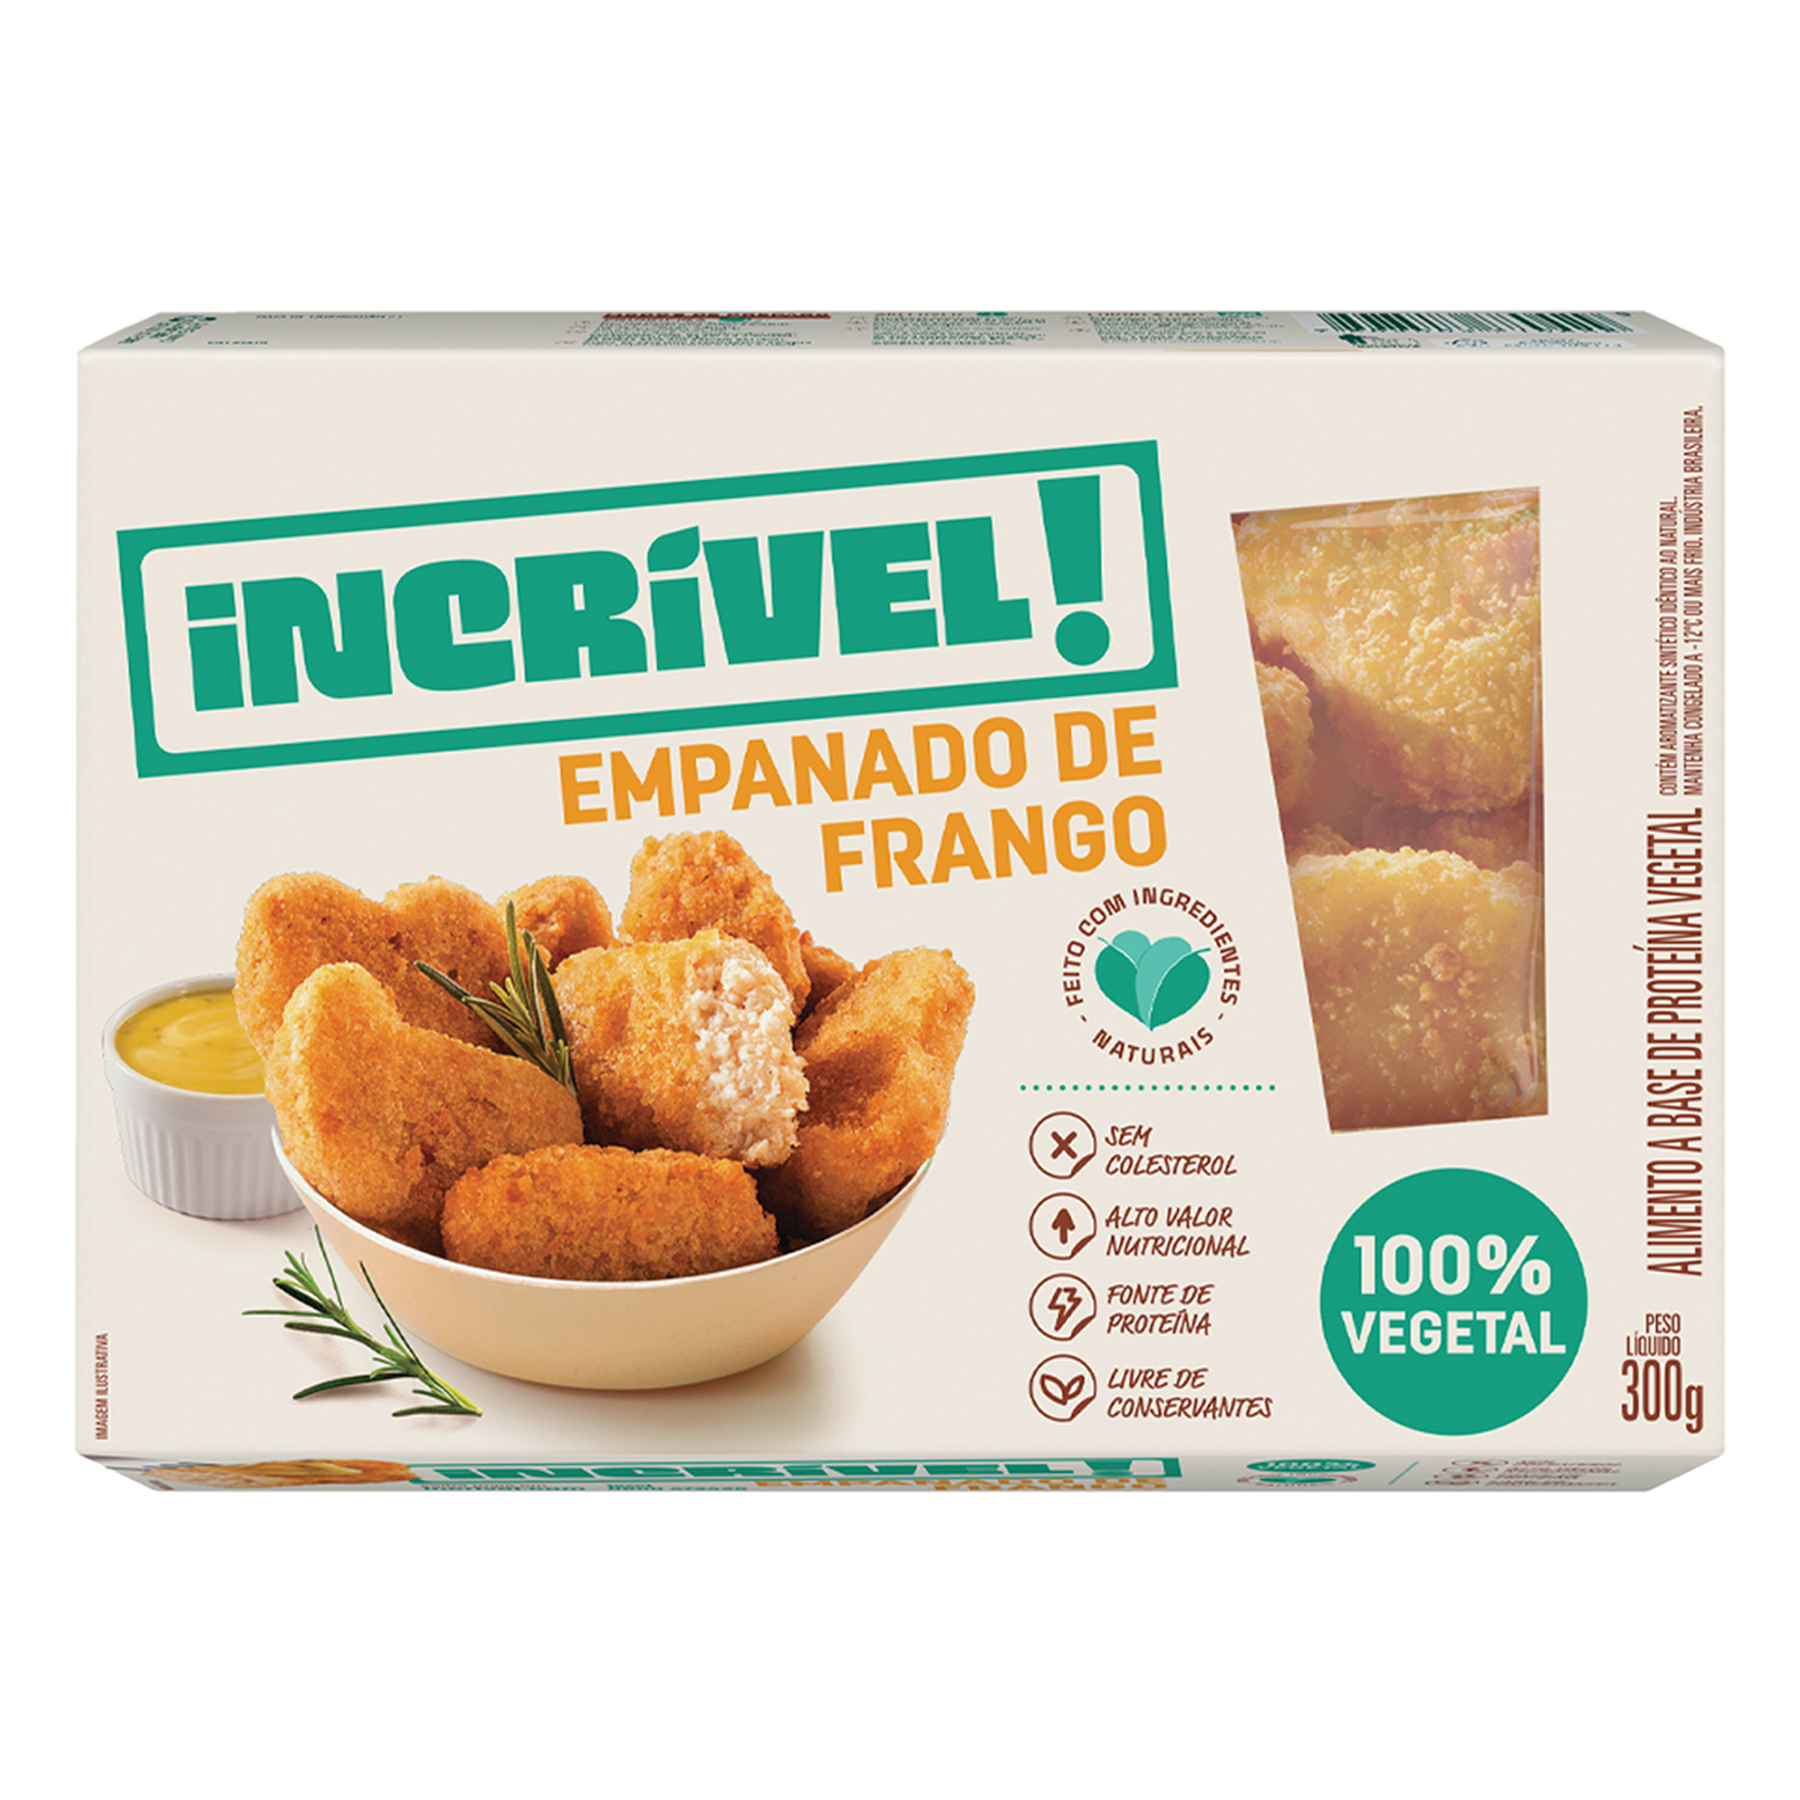 Empanado de Frango 100% Vegetal Incrível! Caixa 300g